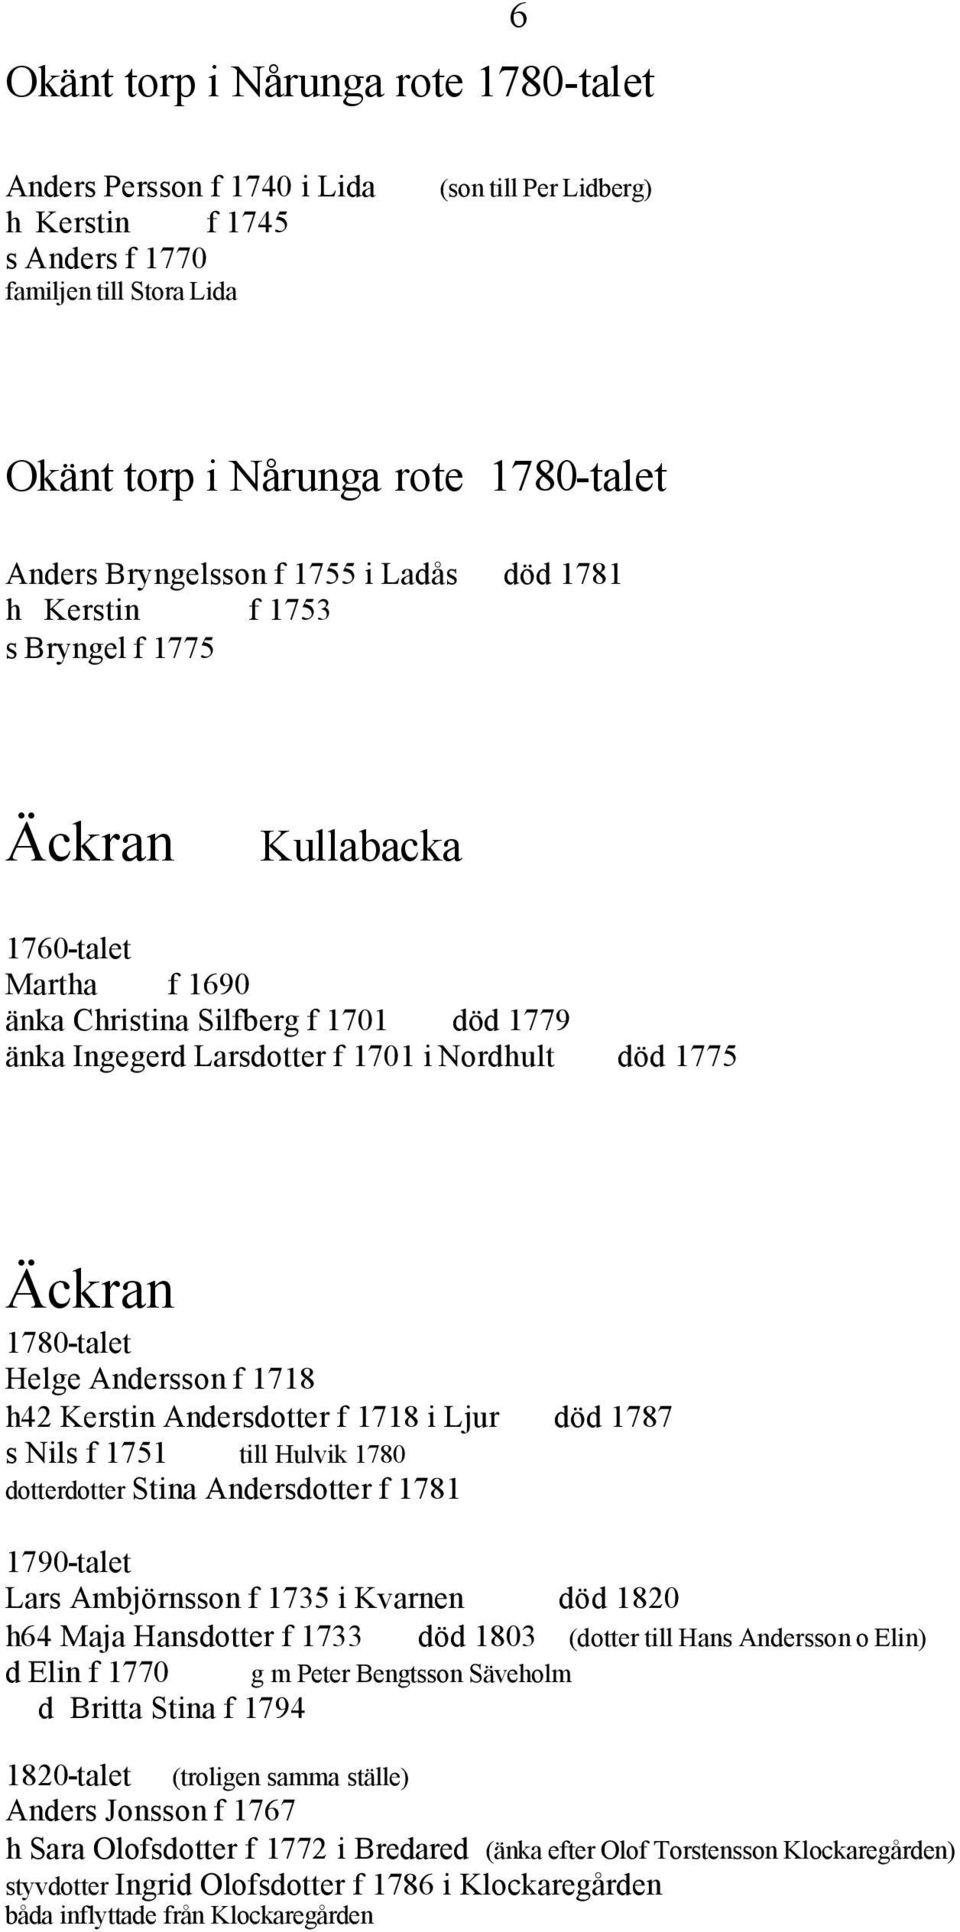 1775 Äckran 1780-talet Helge Andersson f 1718 h42 Kerstin Andersdotter f 1718 i Ljur död 1787 s Nils f 1751 till Hulvik 1780 dotterdotter Stina Andersdotter f 1781 1790-talet Lars Ambjörnsson f 1735